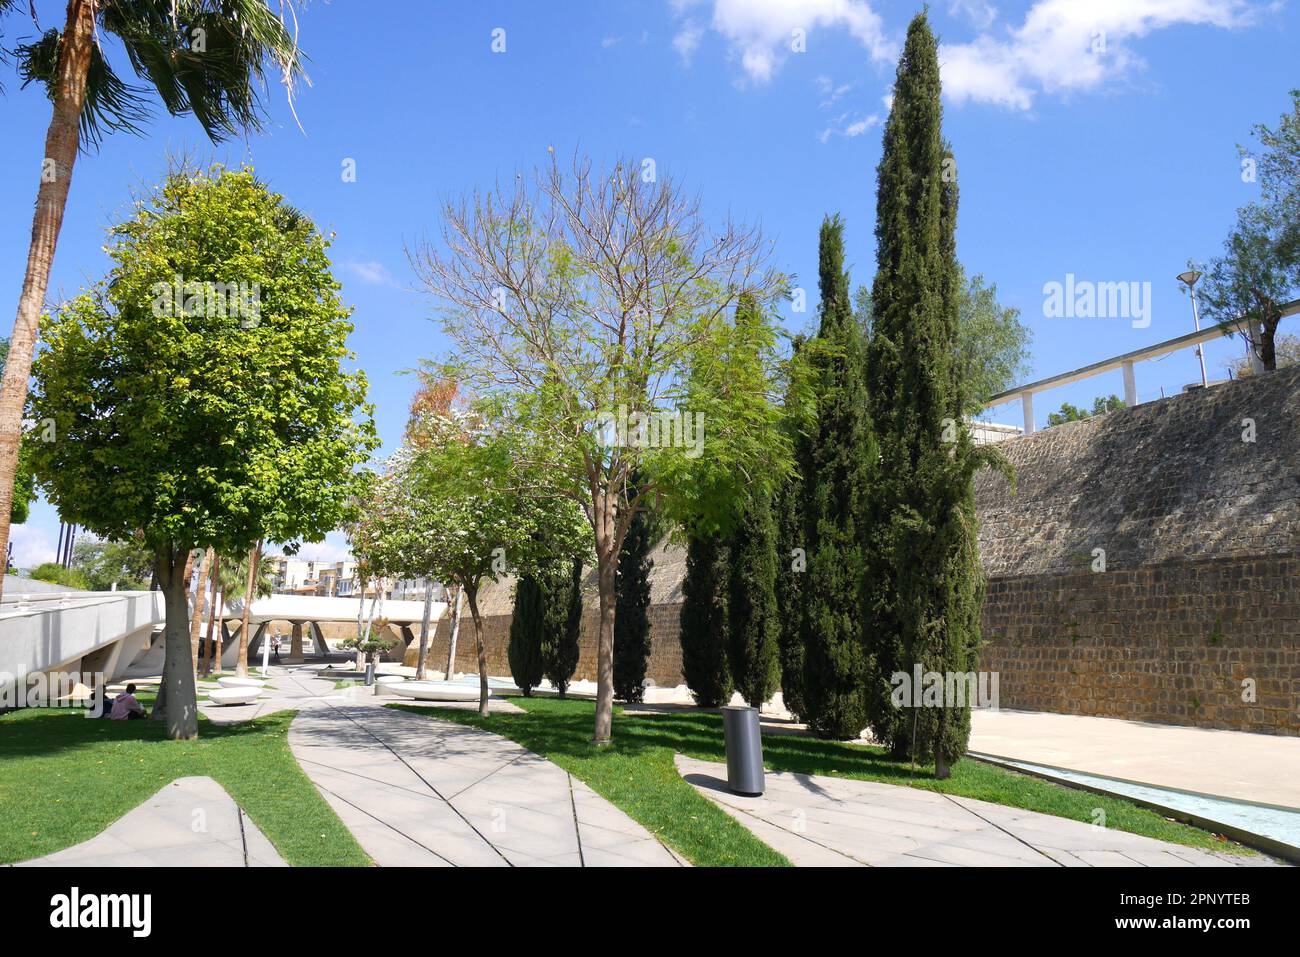 Las murallas de Nicosia, las murallas venecianas, murallas defensivas que rodean la ciudad de Nicosia, República de Chipre Foto de stock